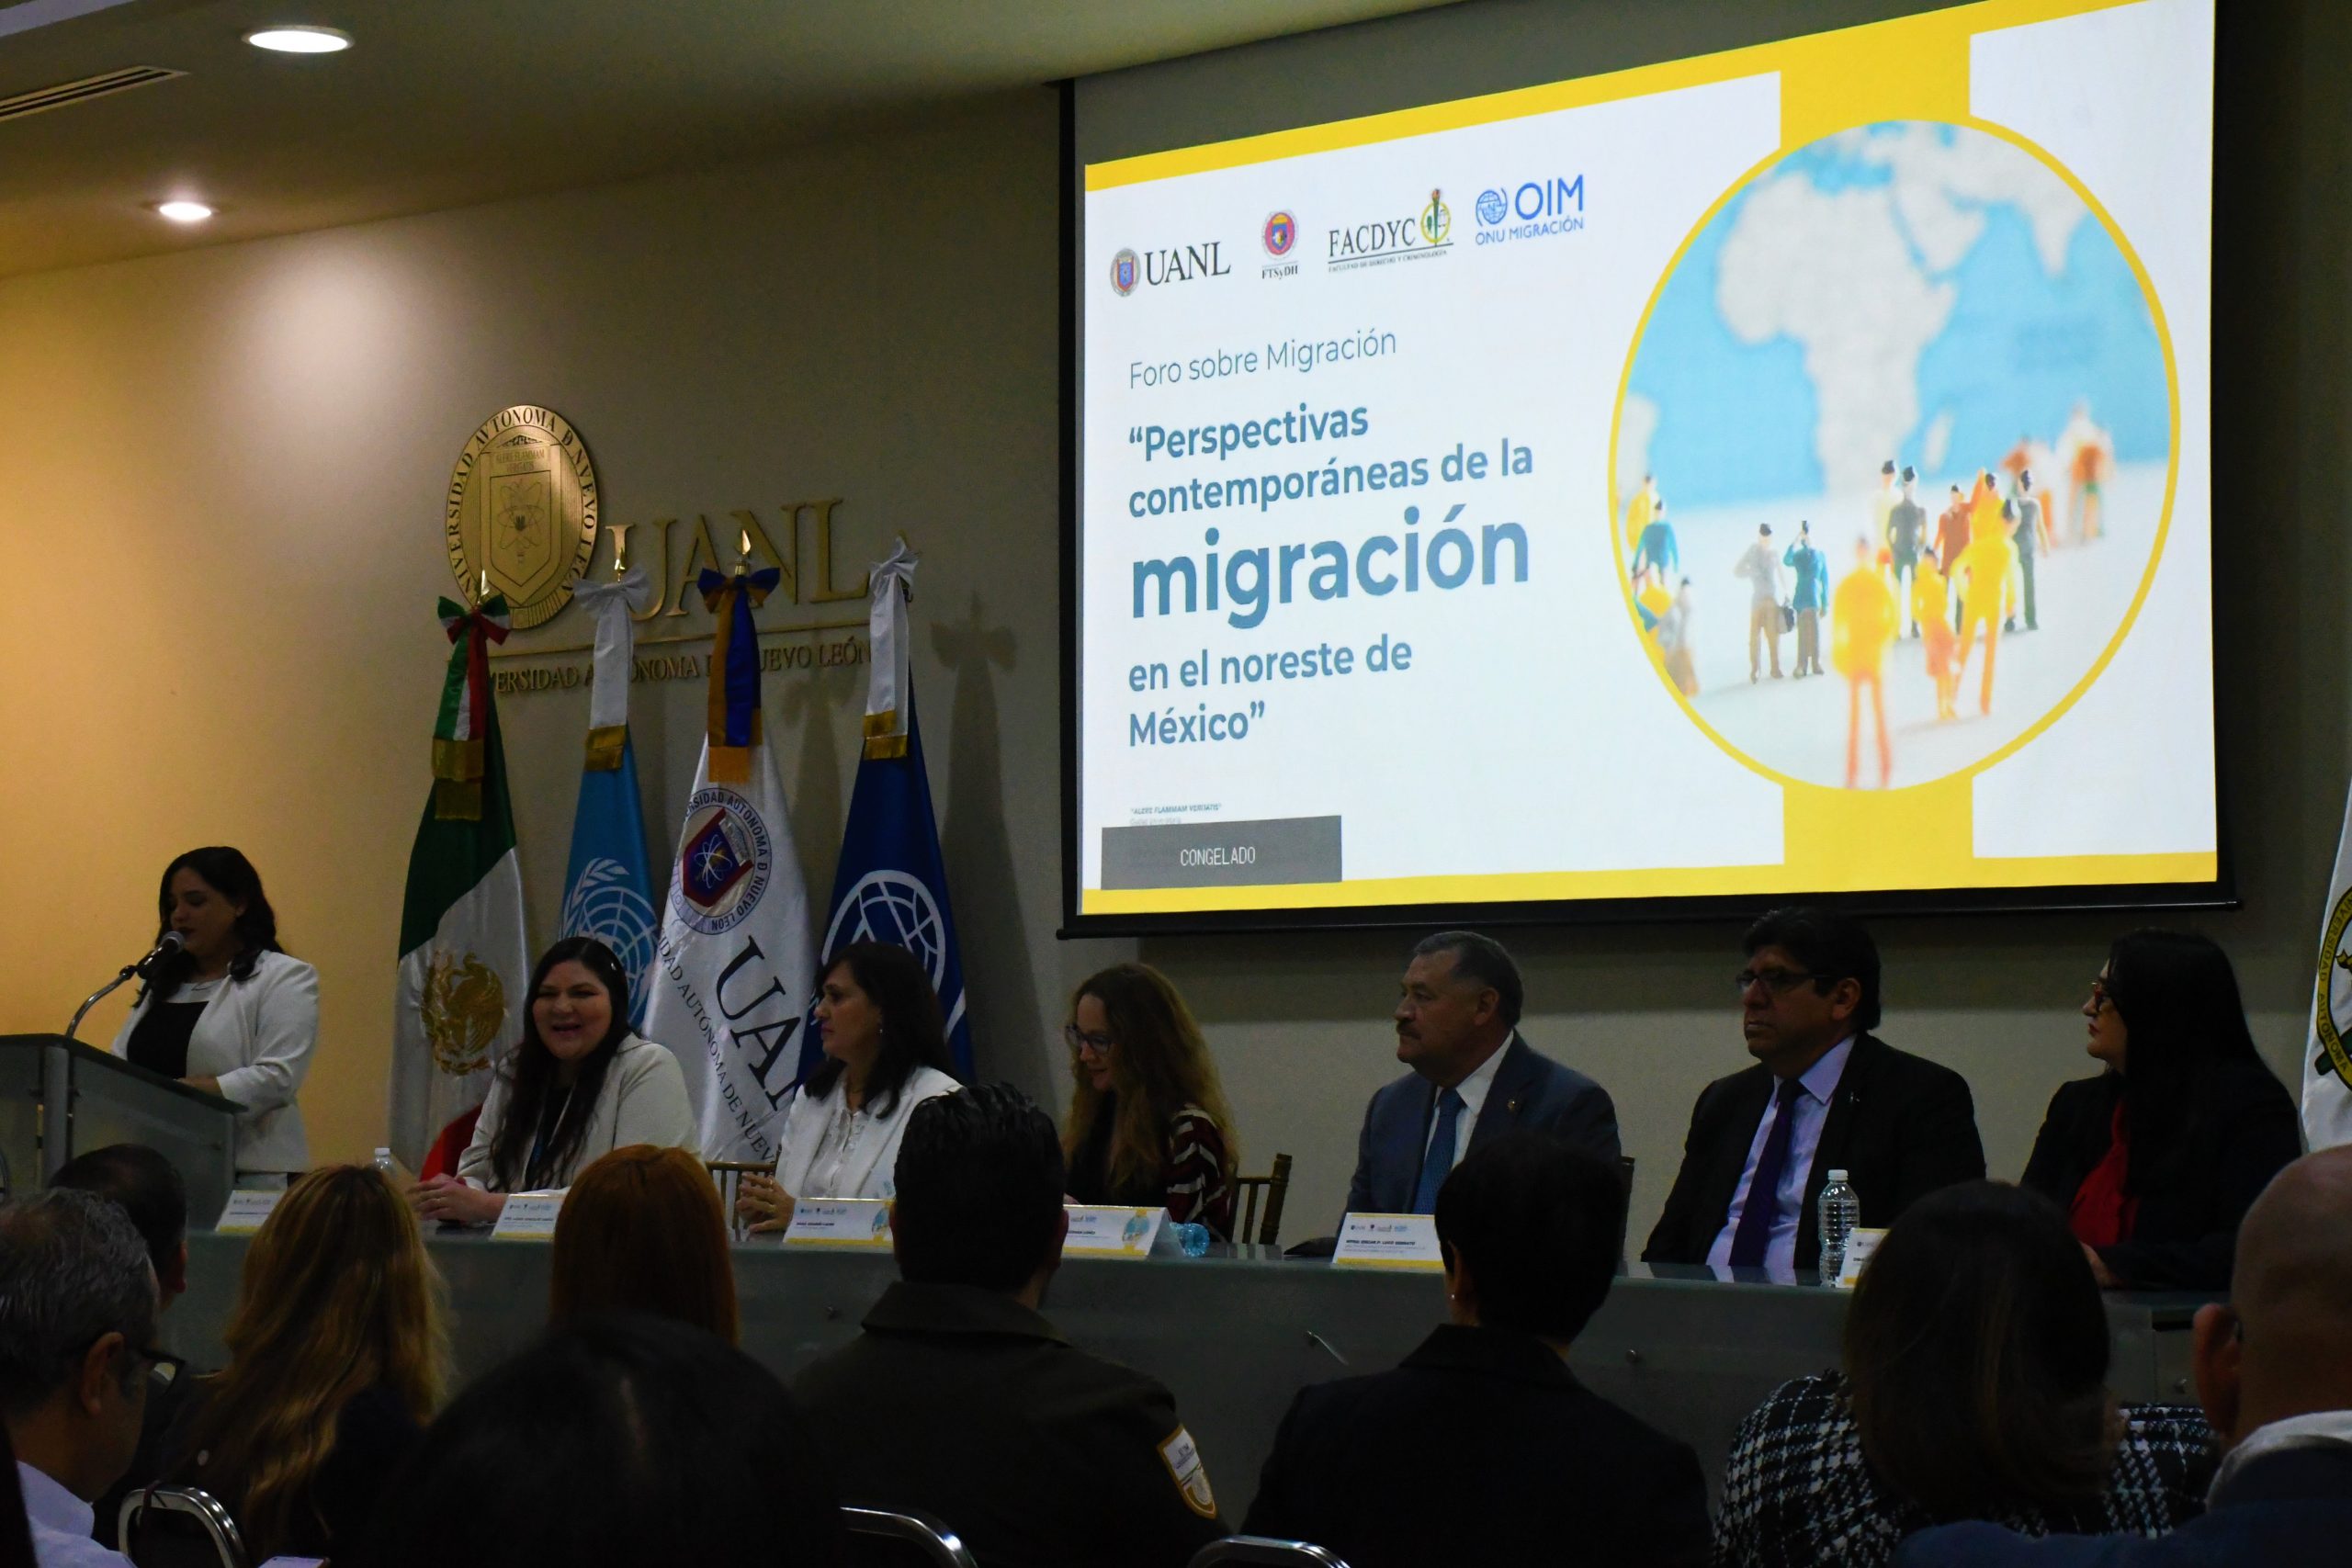 La Universidad Autónoma de Nuevo León en alianza con la Organización Internacional para las Migraciones firmaron un convenio de colaboración para fortalecer el acceso al información, derechos y servicios de la población migrante en el Estado de Nuevo León.